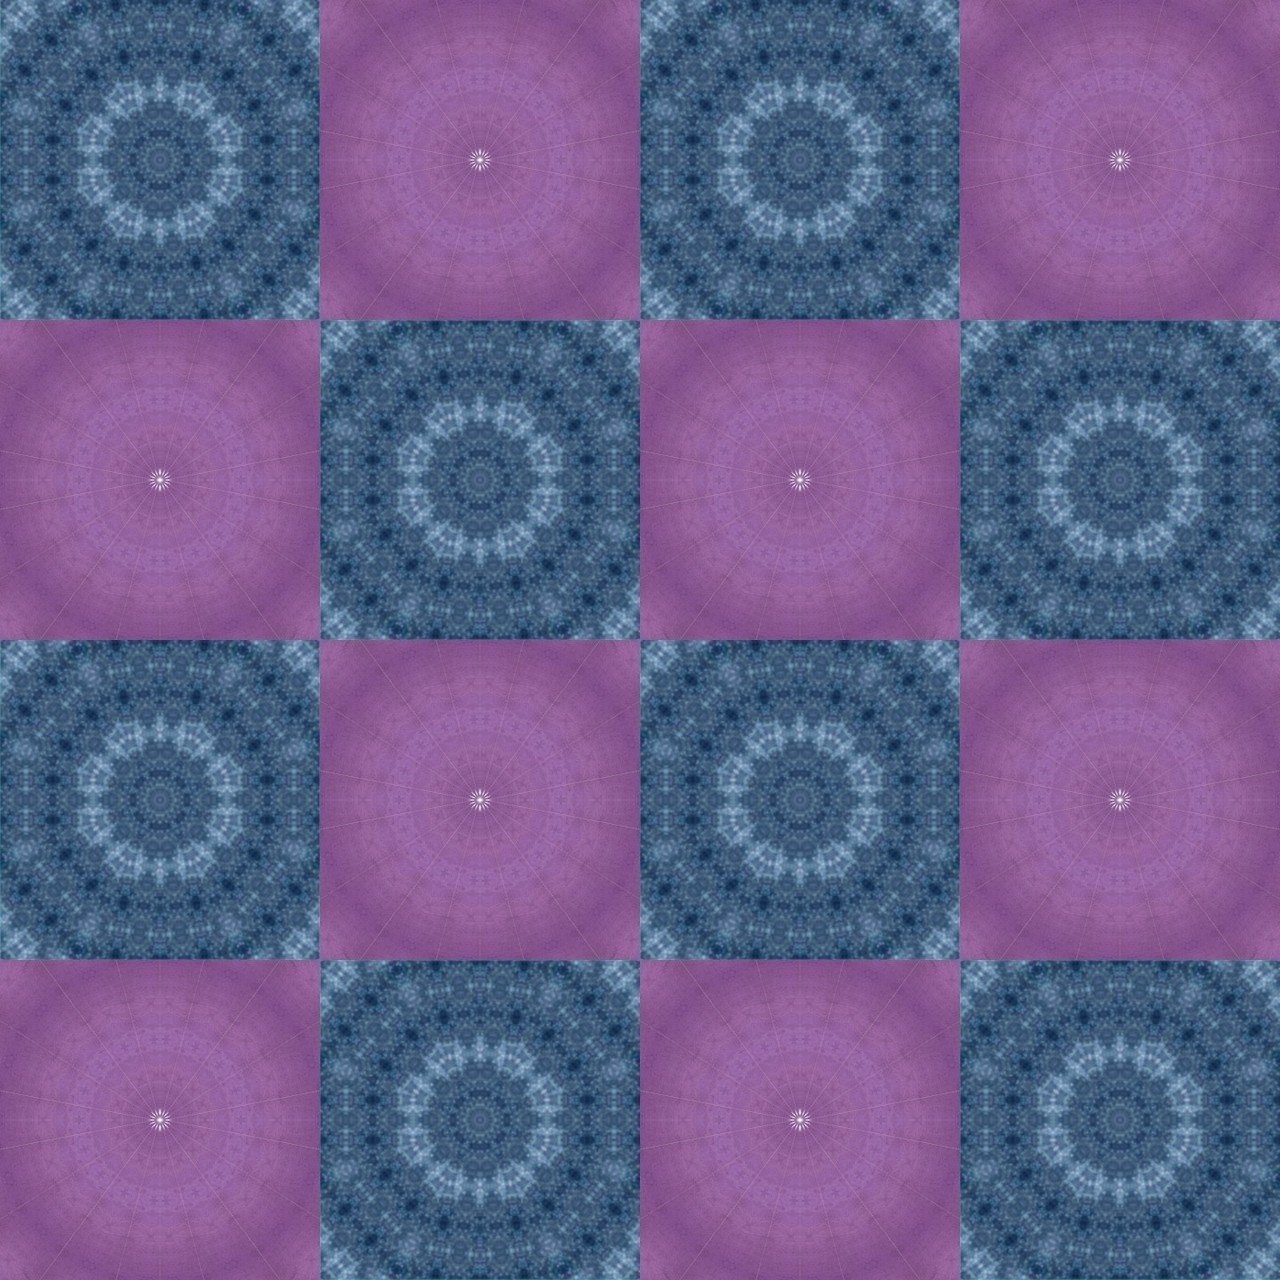 アスファルト 紺 紫 市松模様 シームレスパターン 背景素材 壁紙